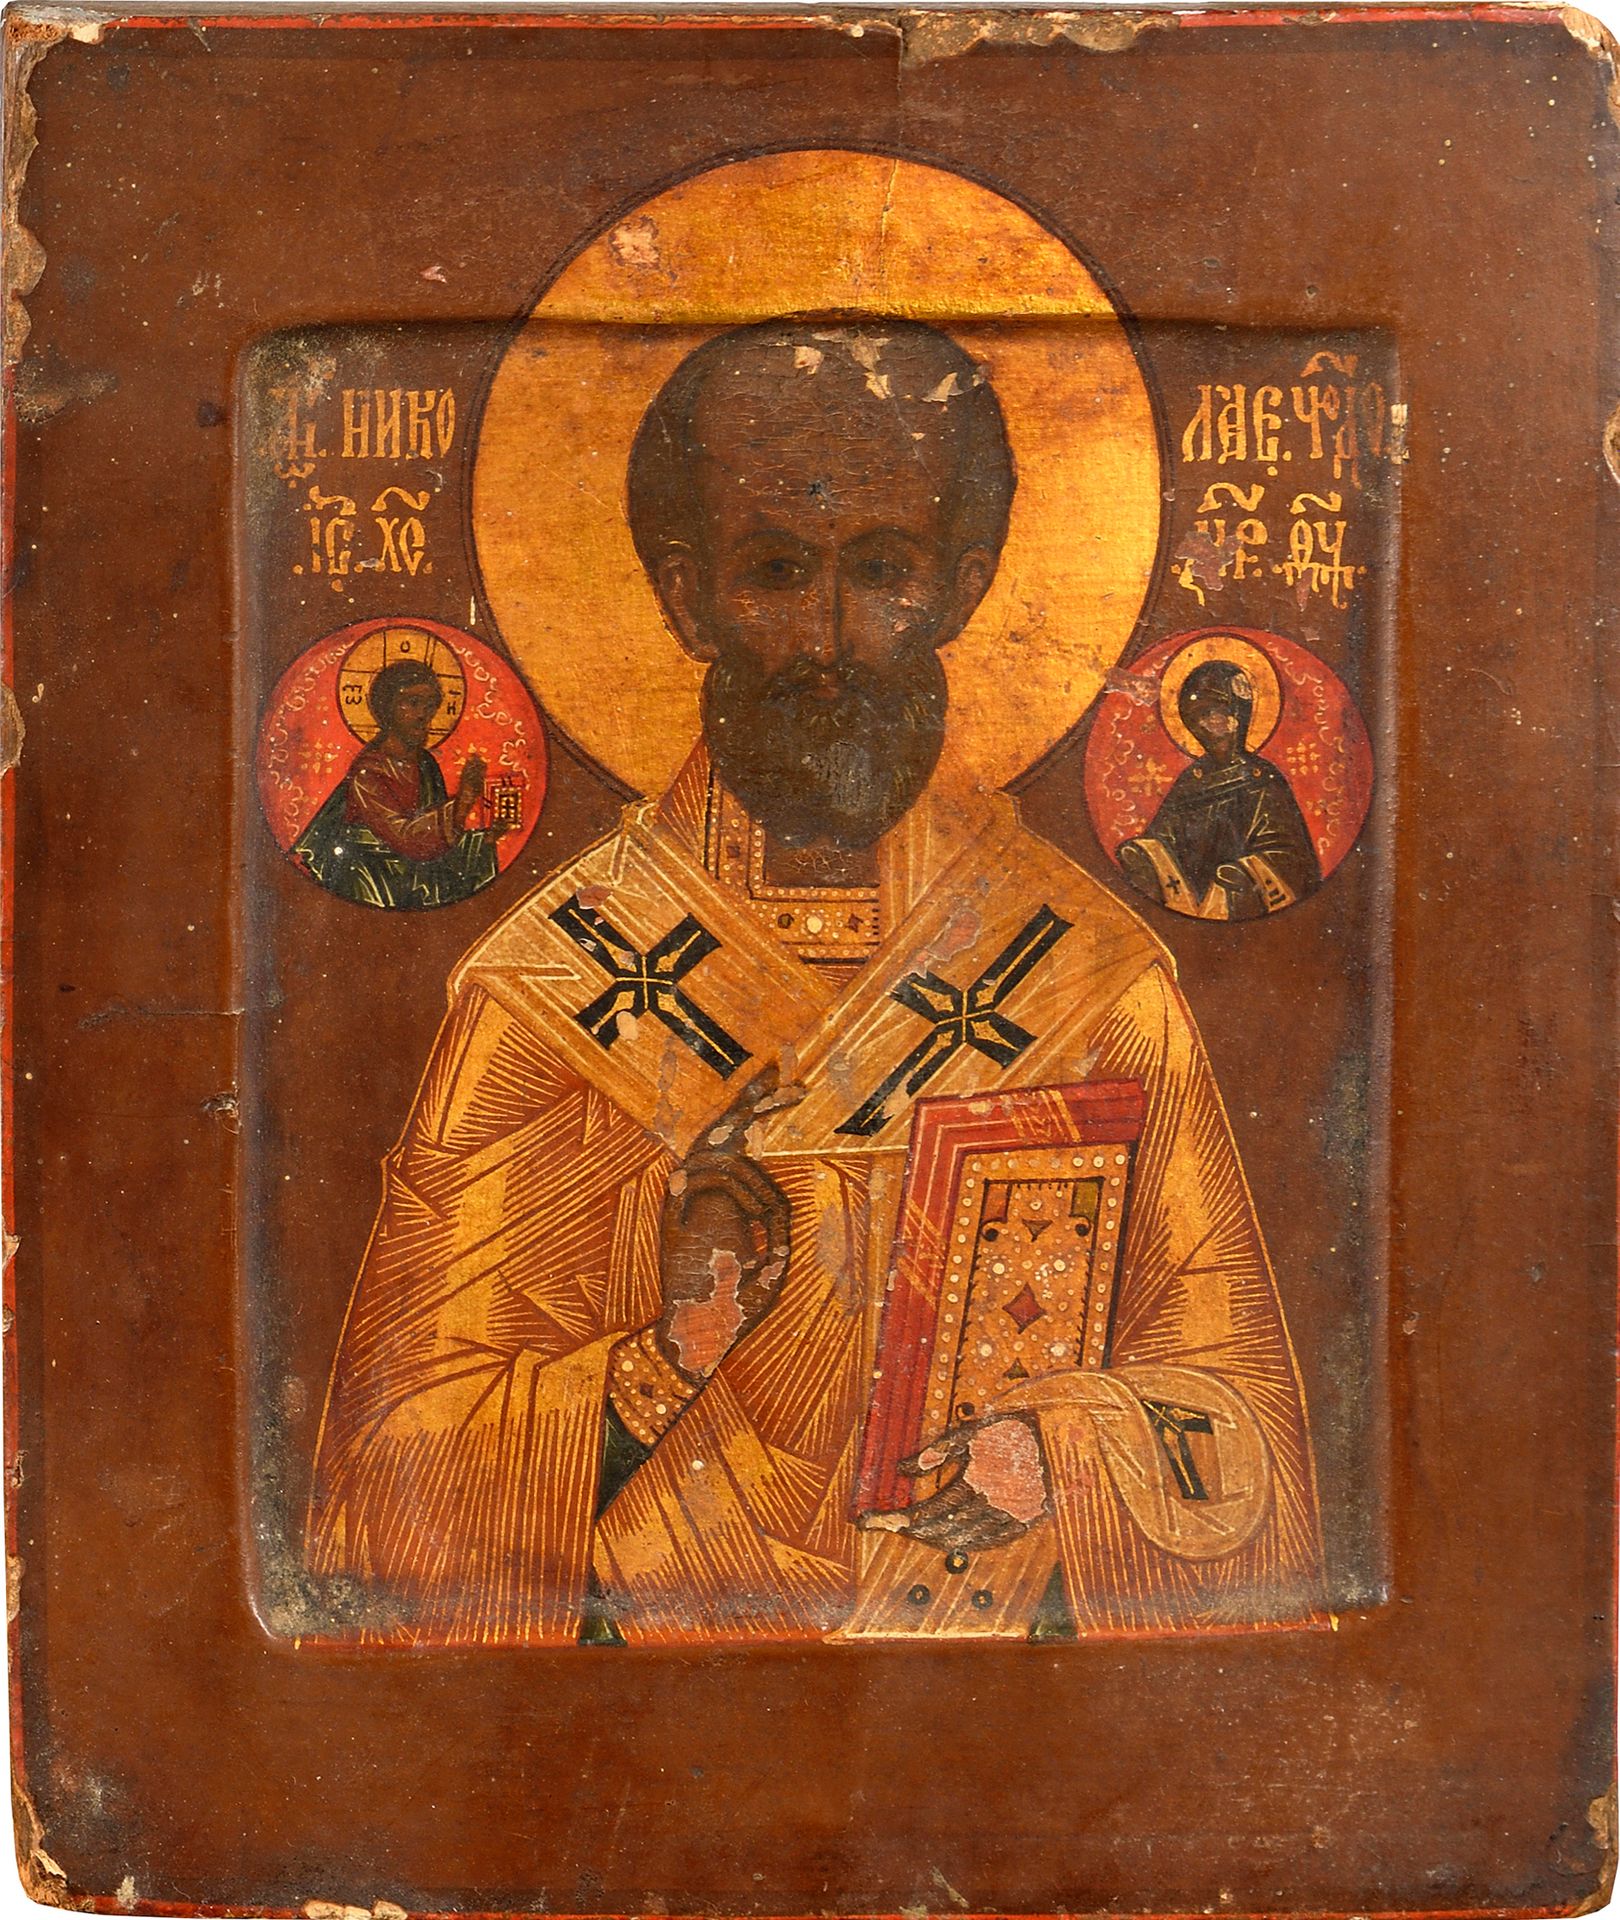 Null Lote de tres iconos:

"San Nicolás", temple sobre madera, 17,5 x 15 cm, Rus&hellip;